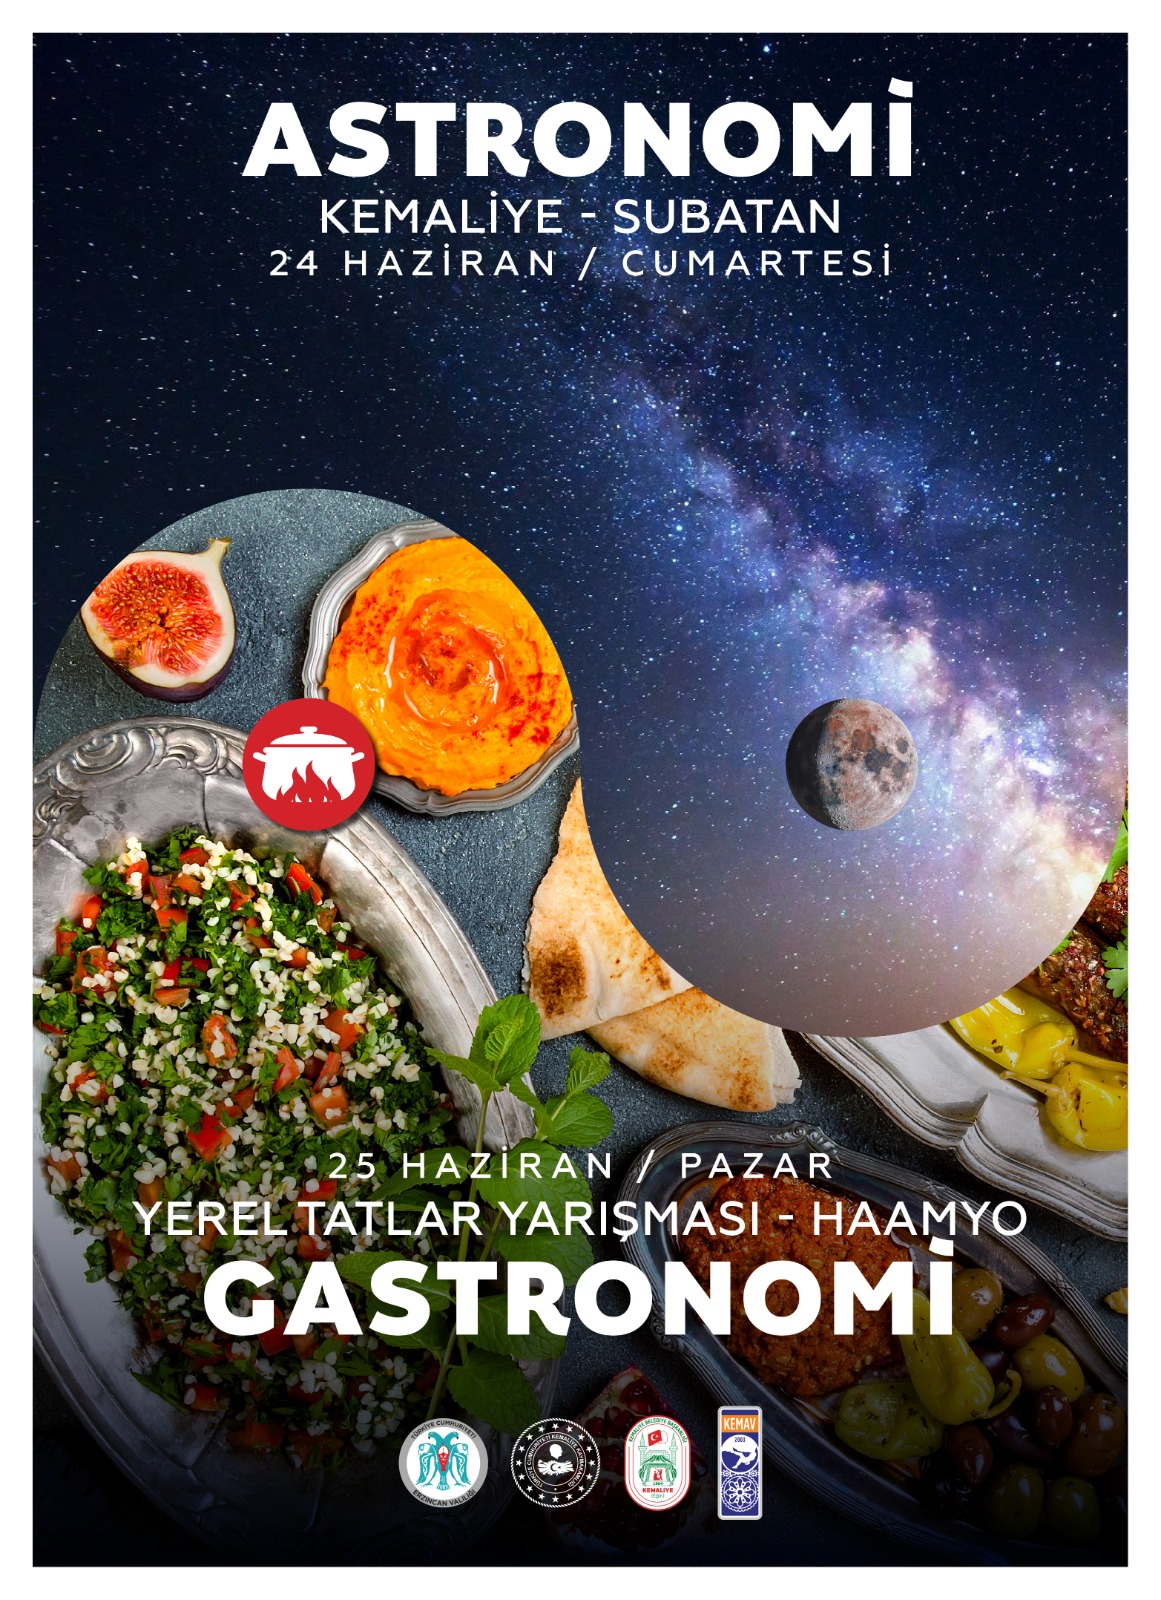 Astronomi Uzay Gözlemi ve Gastronomi Yemek Yarışması